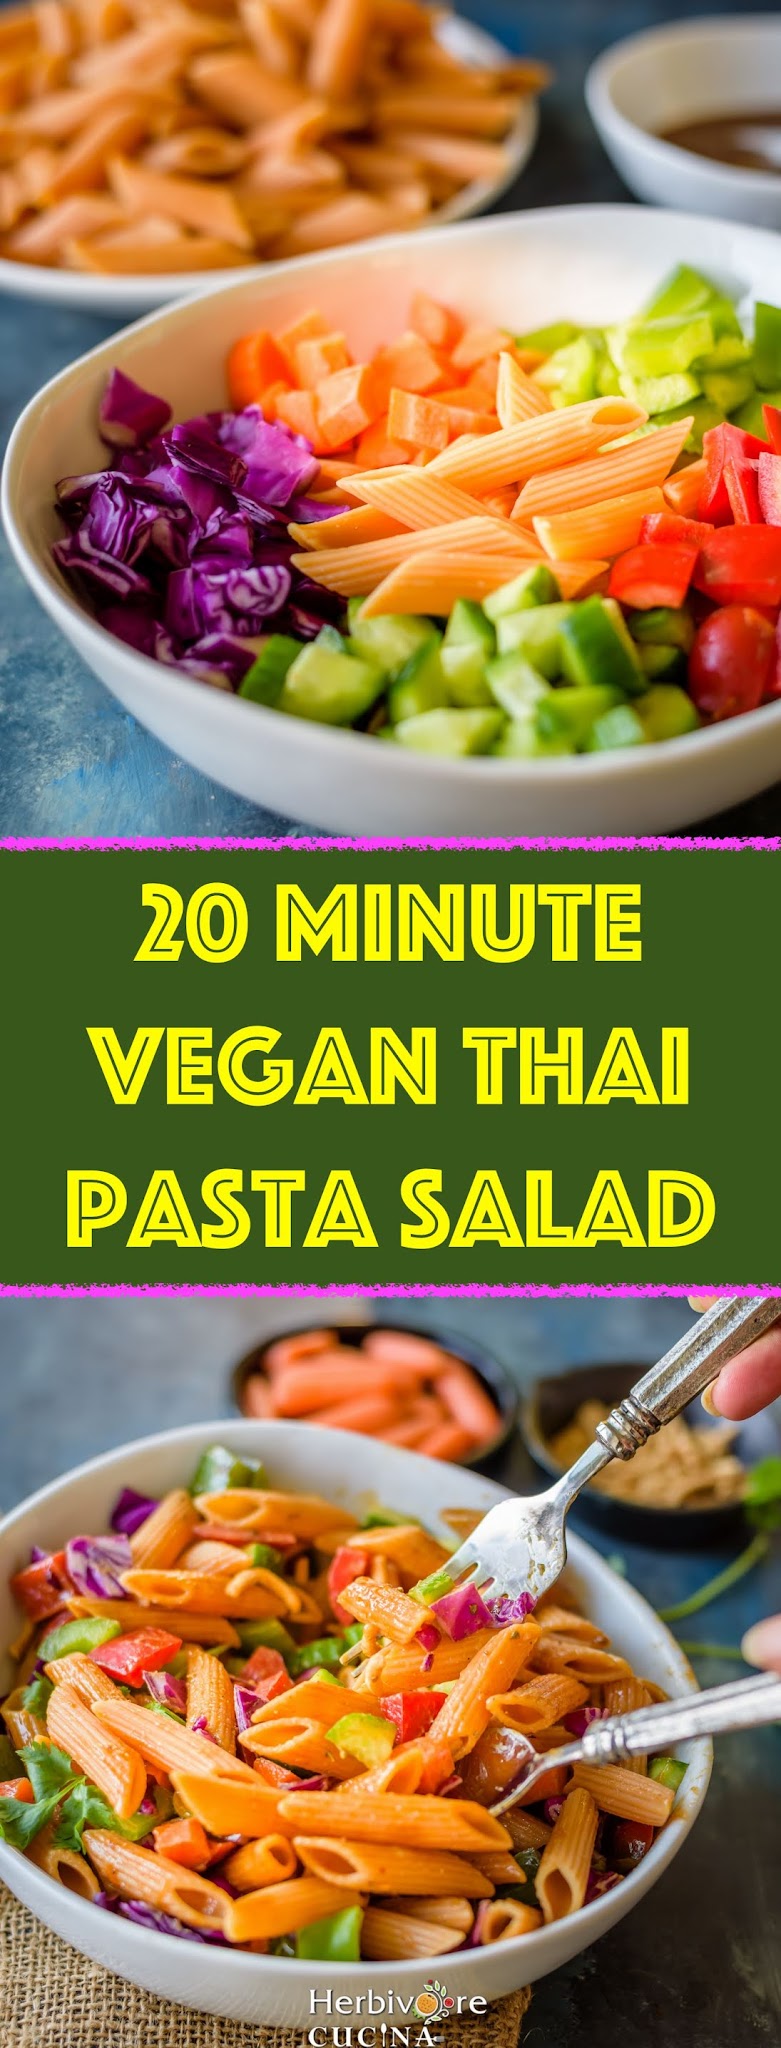 Vegan Thai Pasta Salad - Herbivore Cucina